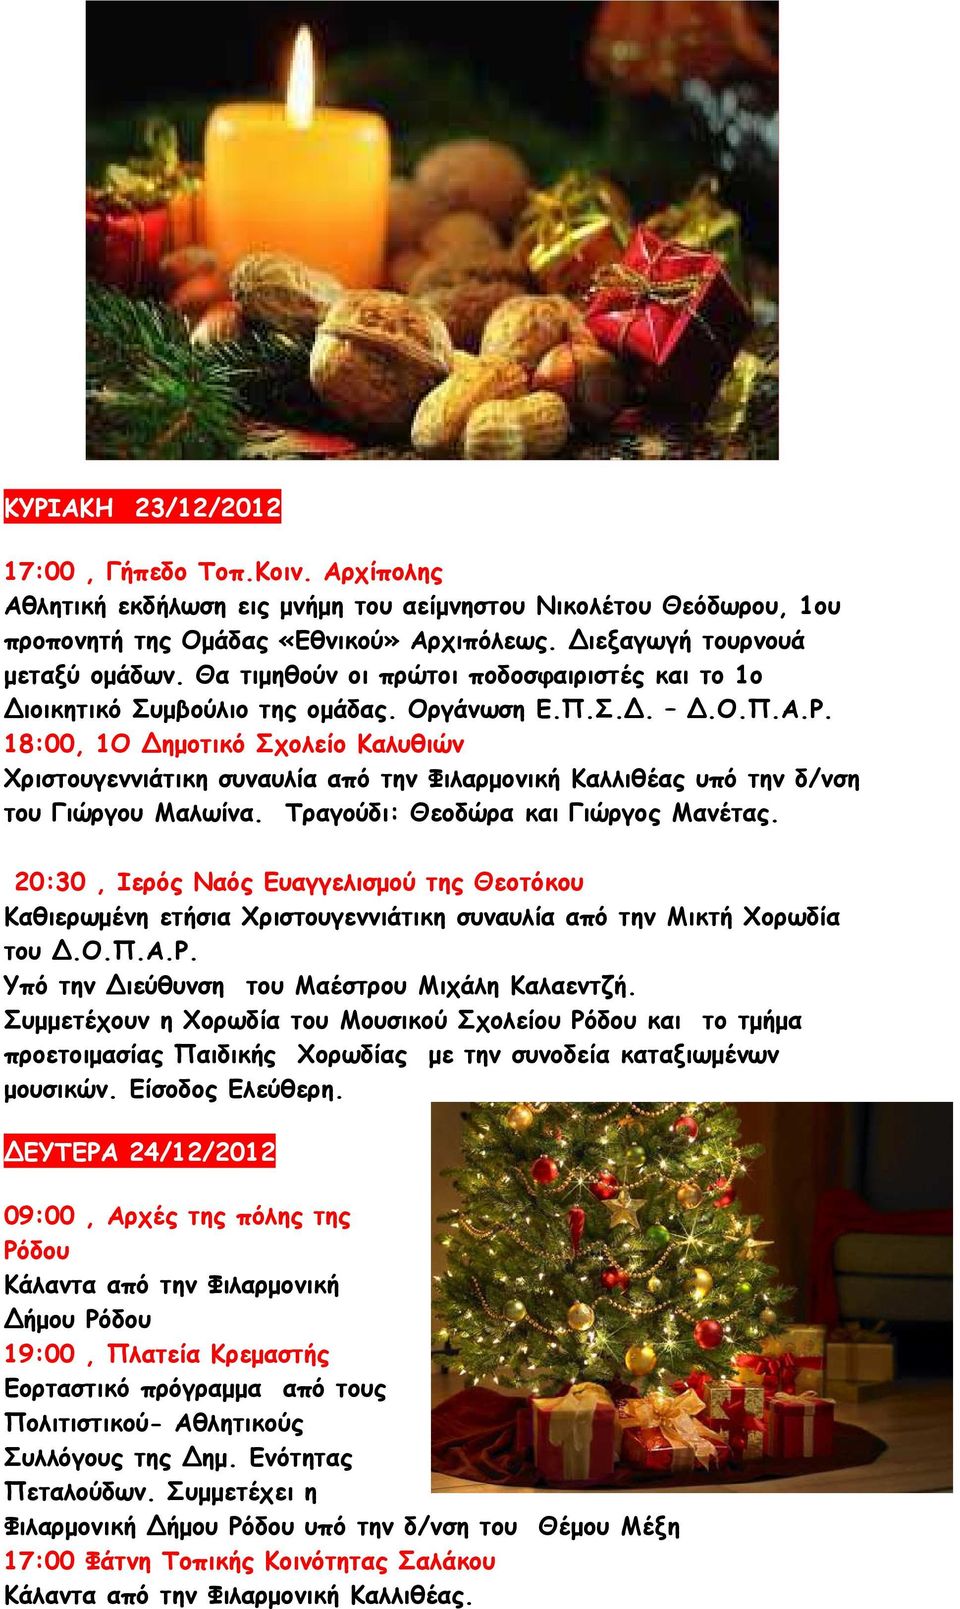 18:00, 1Ο ηµοτικό Σχολείο Καλυθιών Χριστουγεννιάτικη συναυλία από την Φιλαρµονική Καλλιθέας υπό την δ/νση του Γιώργου Μαλωίνα. Τραγούδι: Θεοδώρα και Γιώργος Μανέτας.